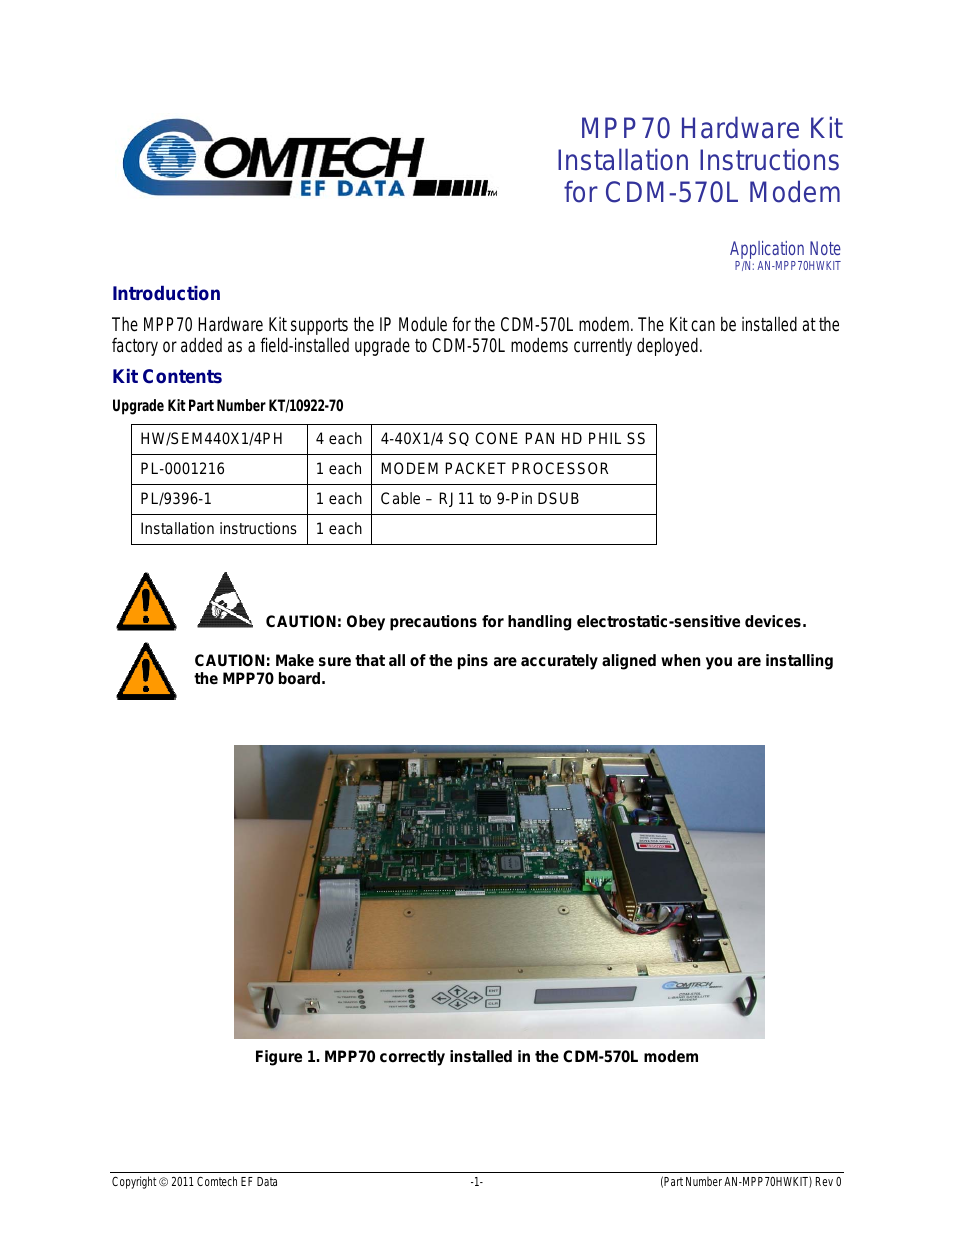 MPP70 Hardware Kit for CDM-570L